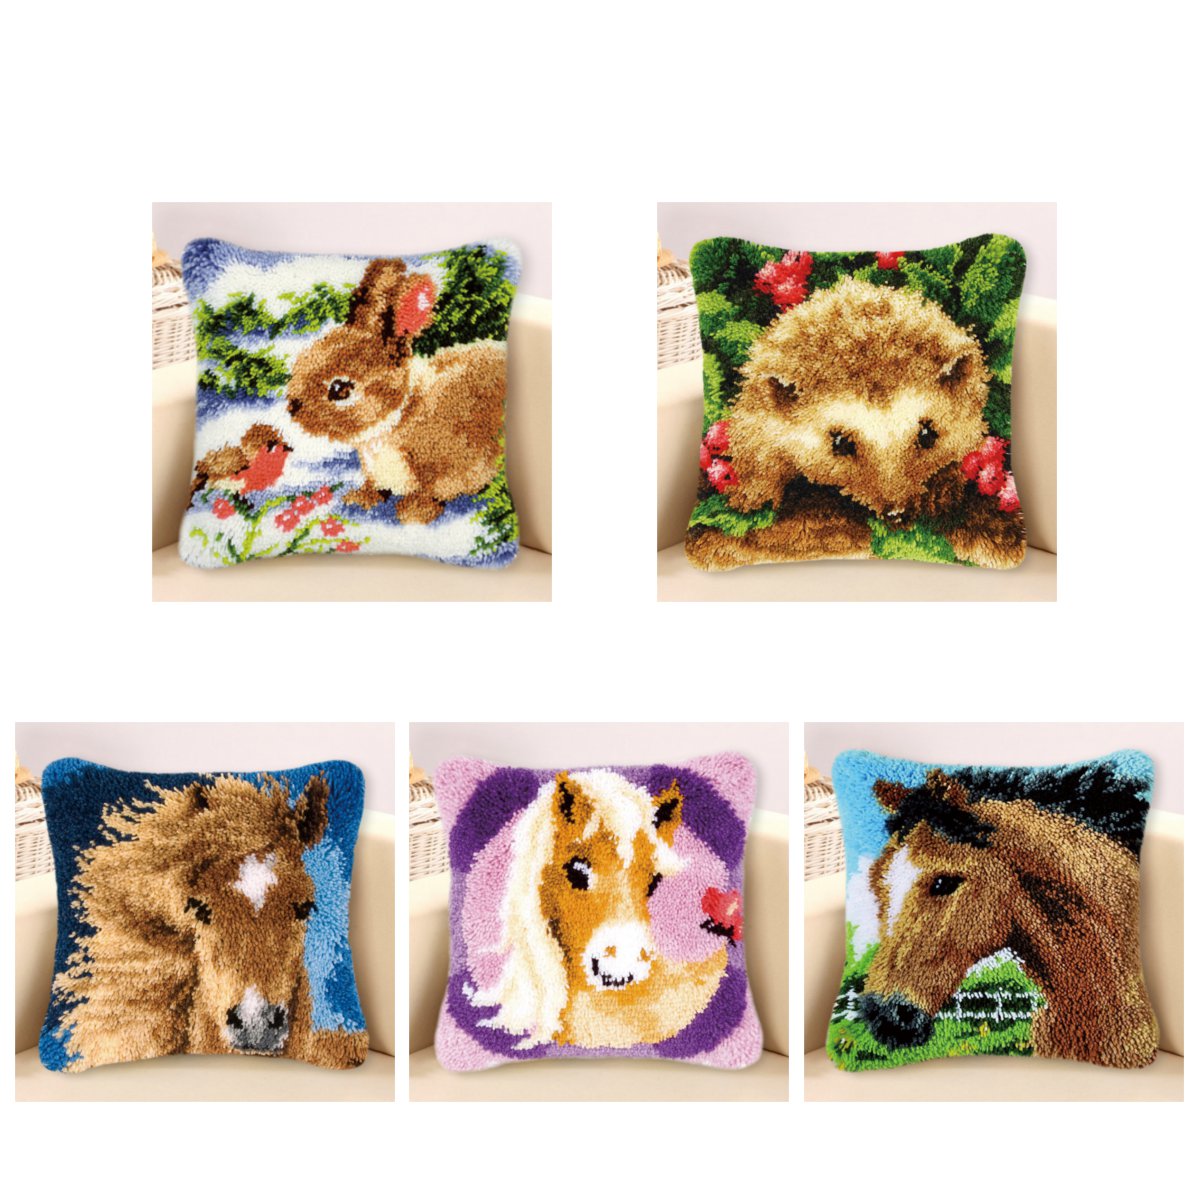 Funny-Animal-Pattern-Latch-Hook-Kit-Pillow-Case-Making-Kit-DIY-Craft-43x43cm-1643529-5